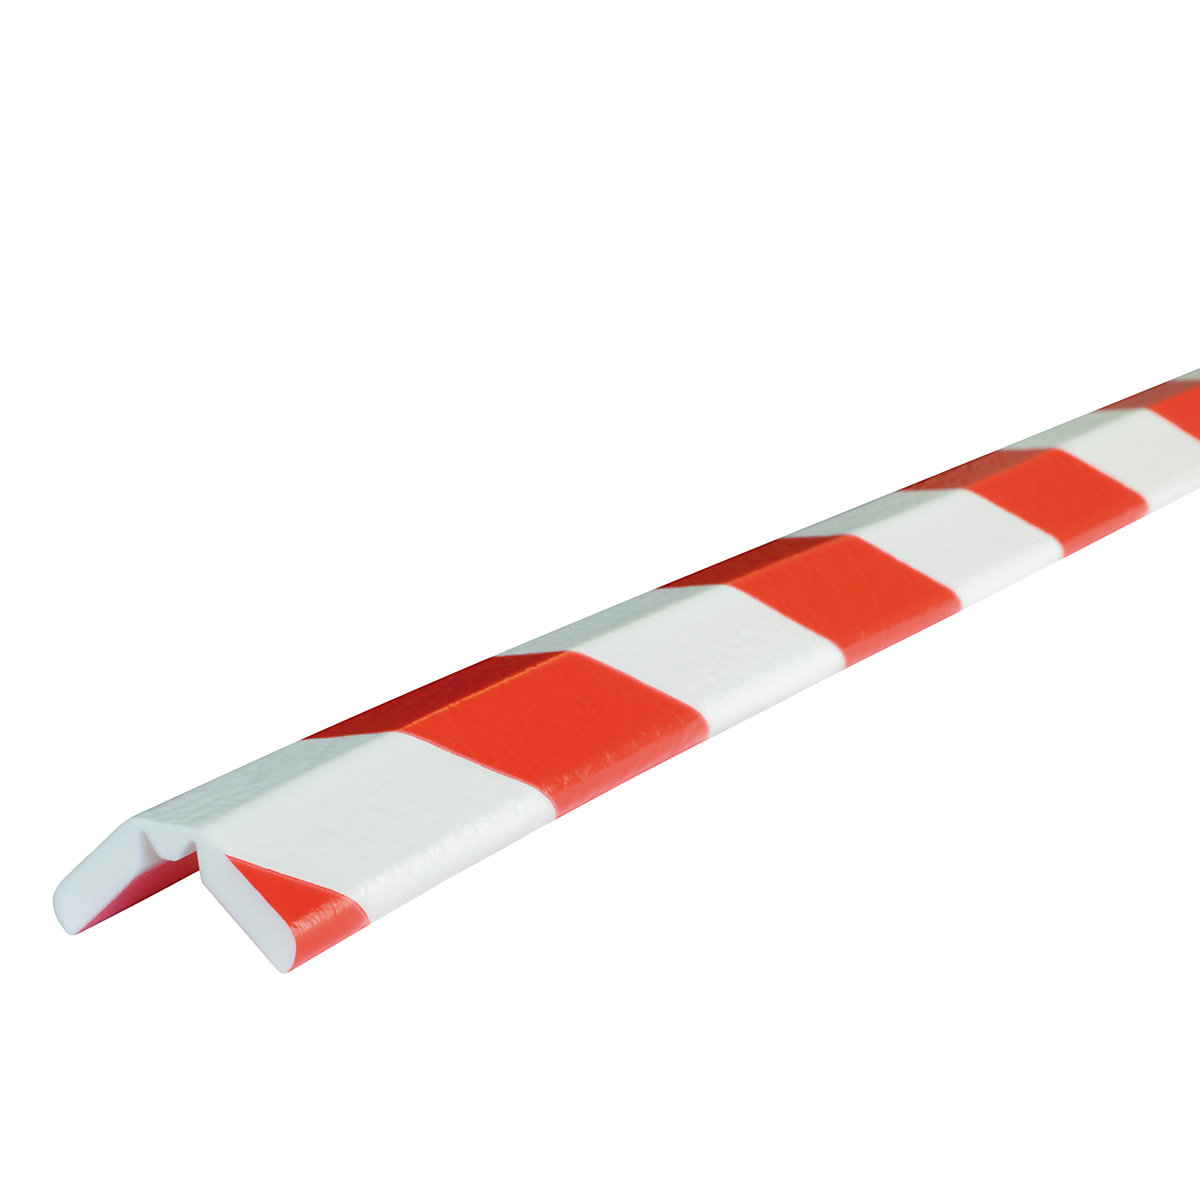 Zaščita vogalov Knuffi® – SHG, tip W, 1 rola po 5 m, rdeče / bele barve-14